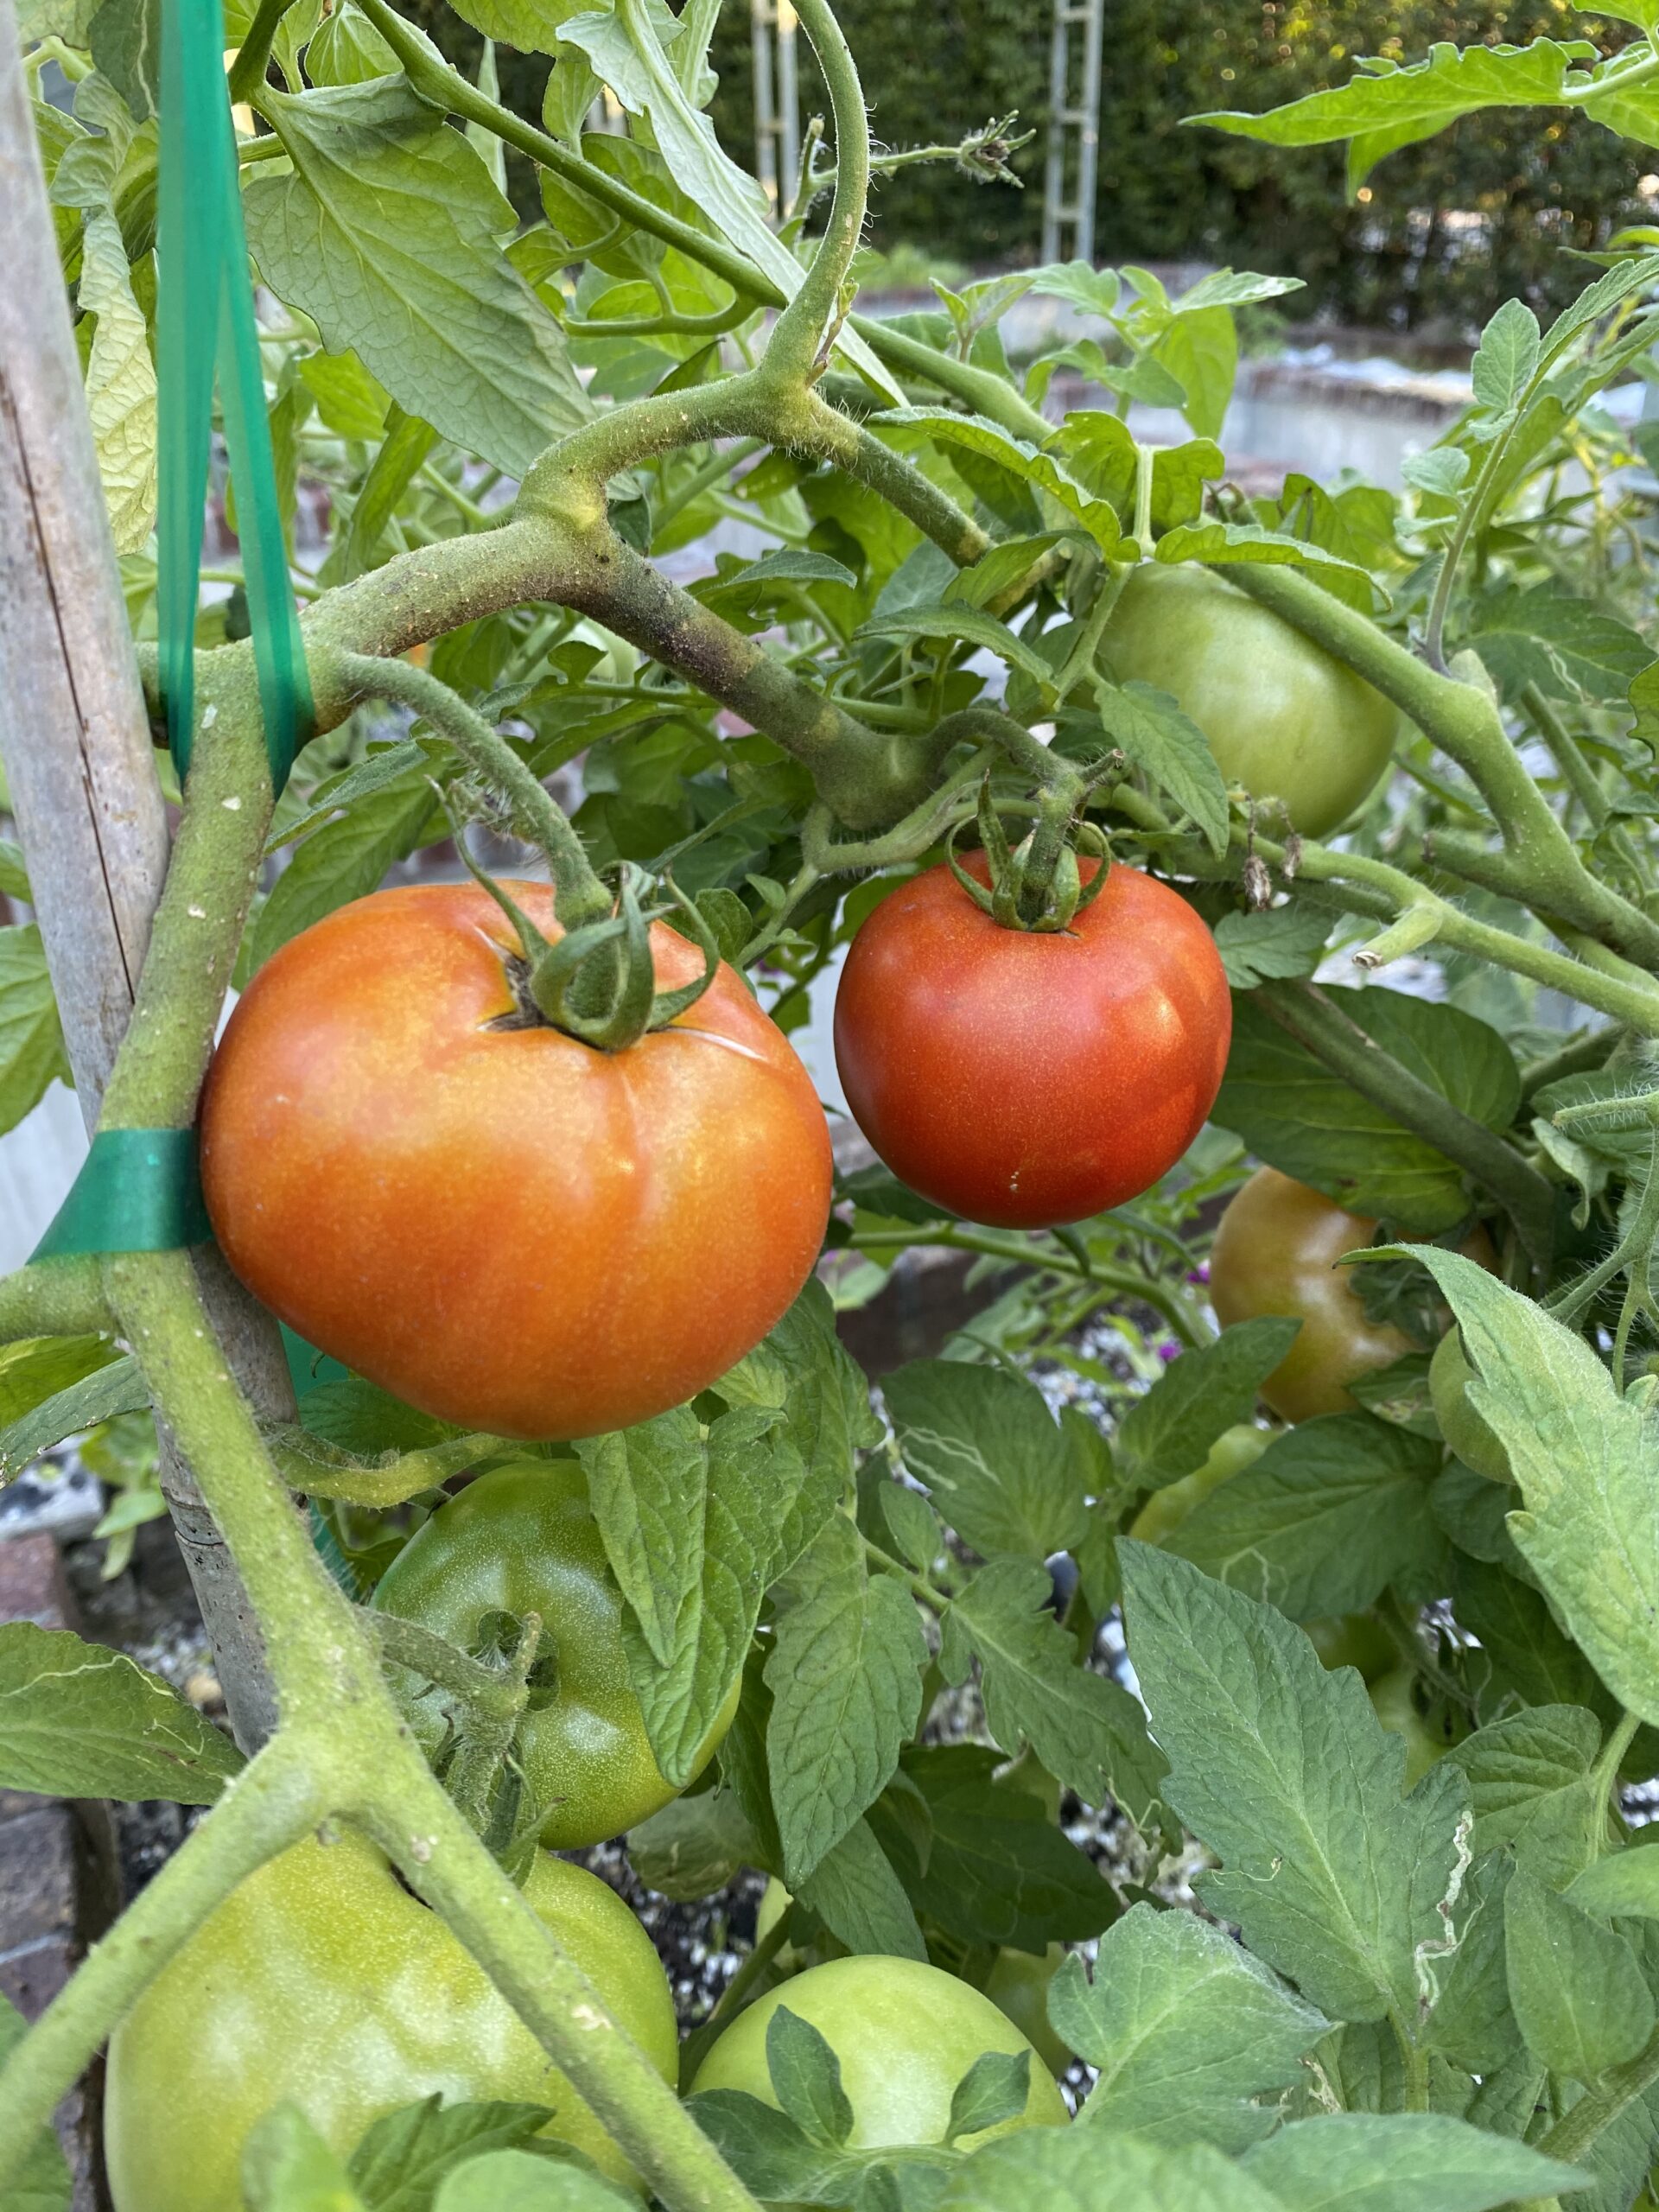 Many garden treasure variety tomatoes